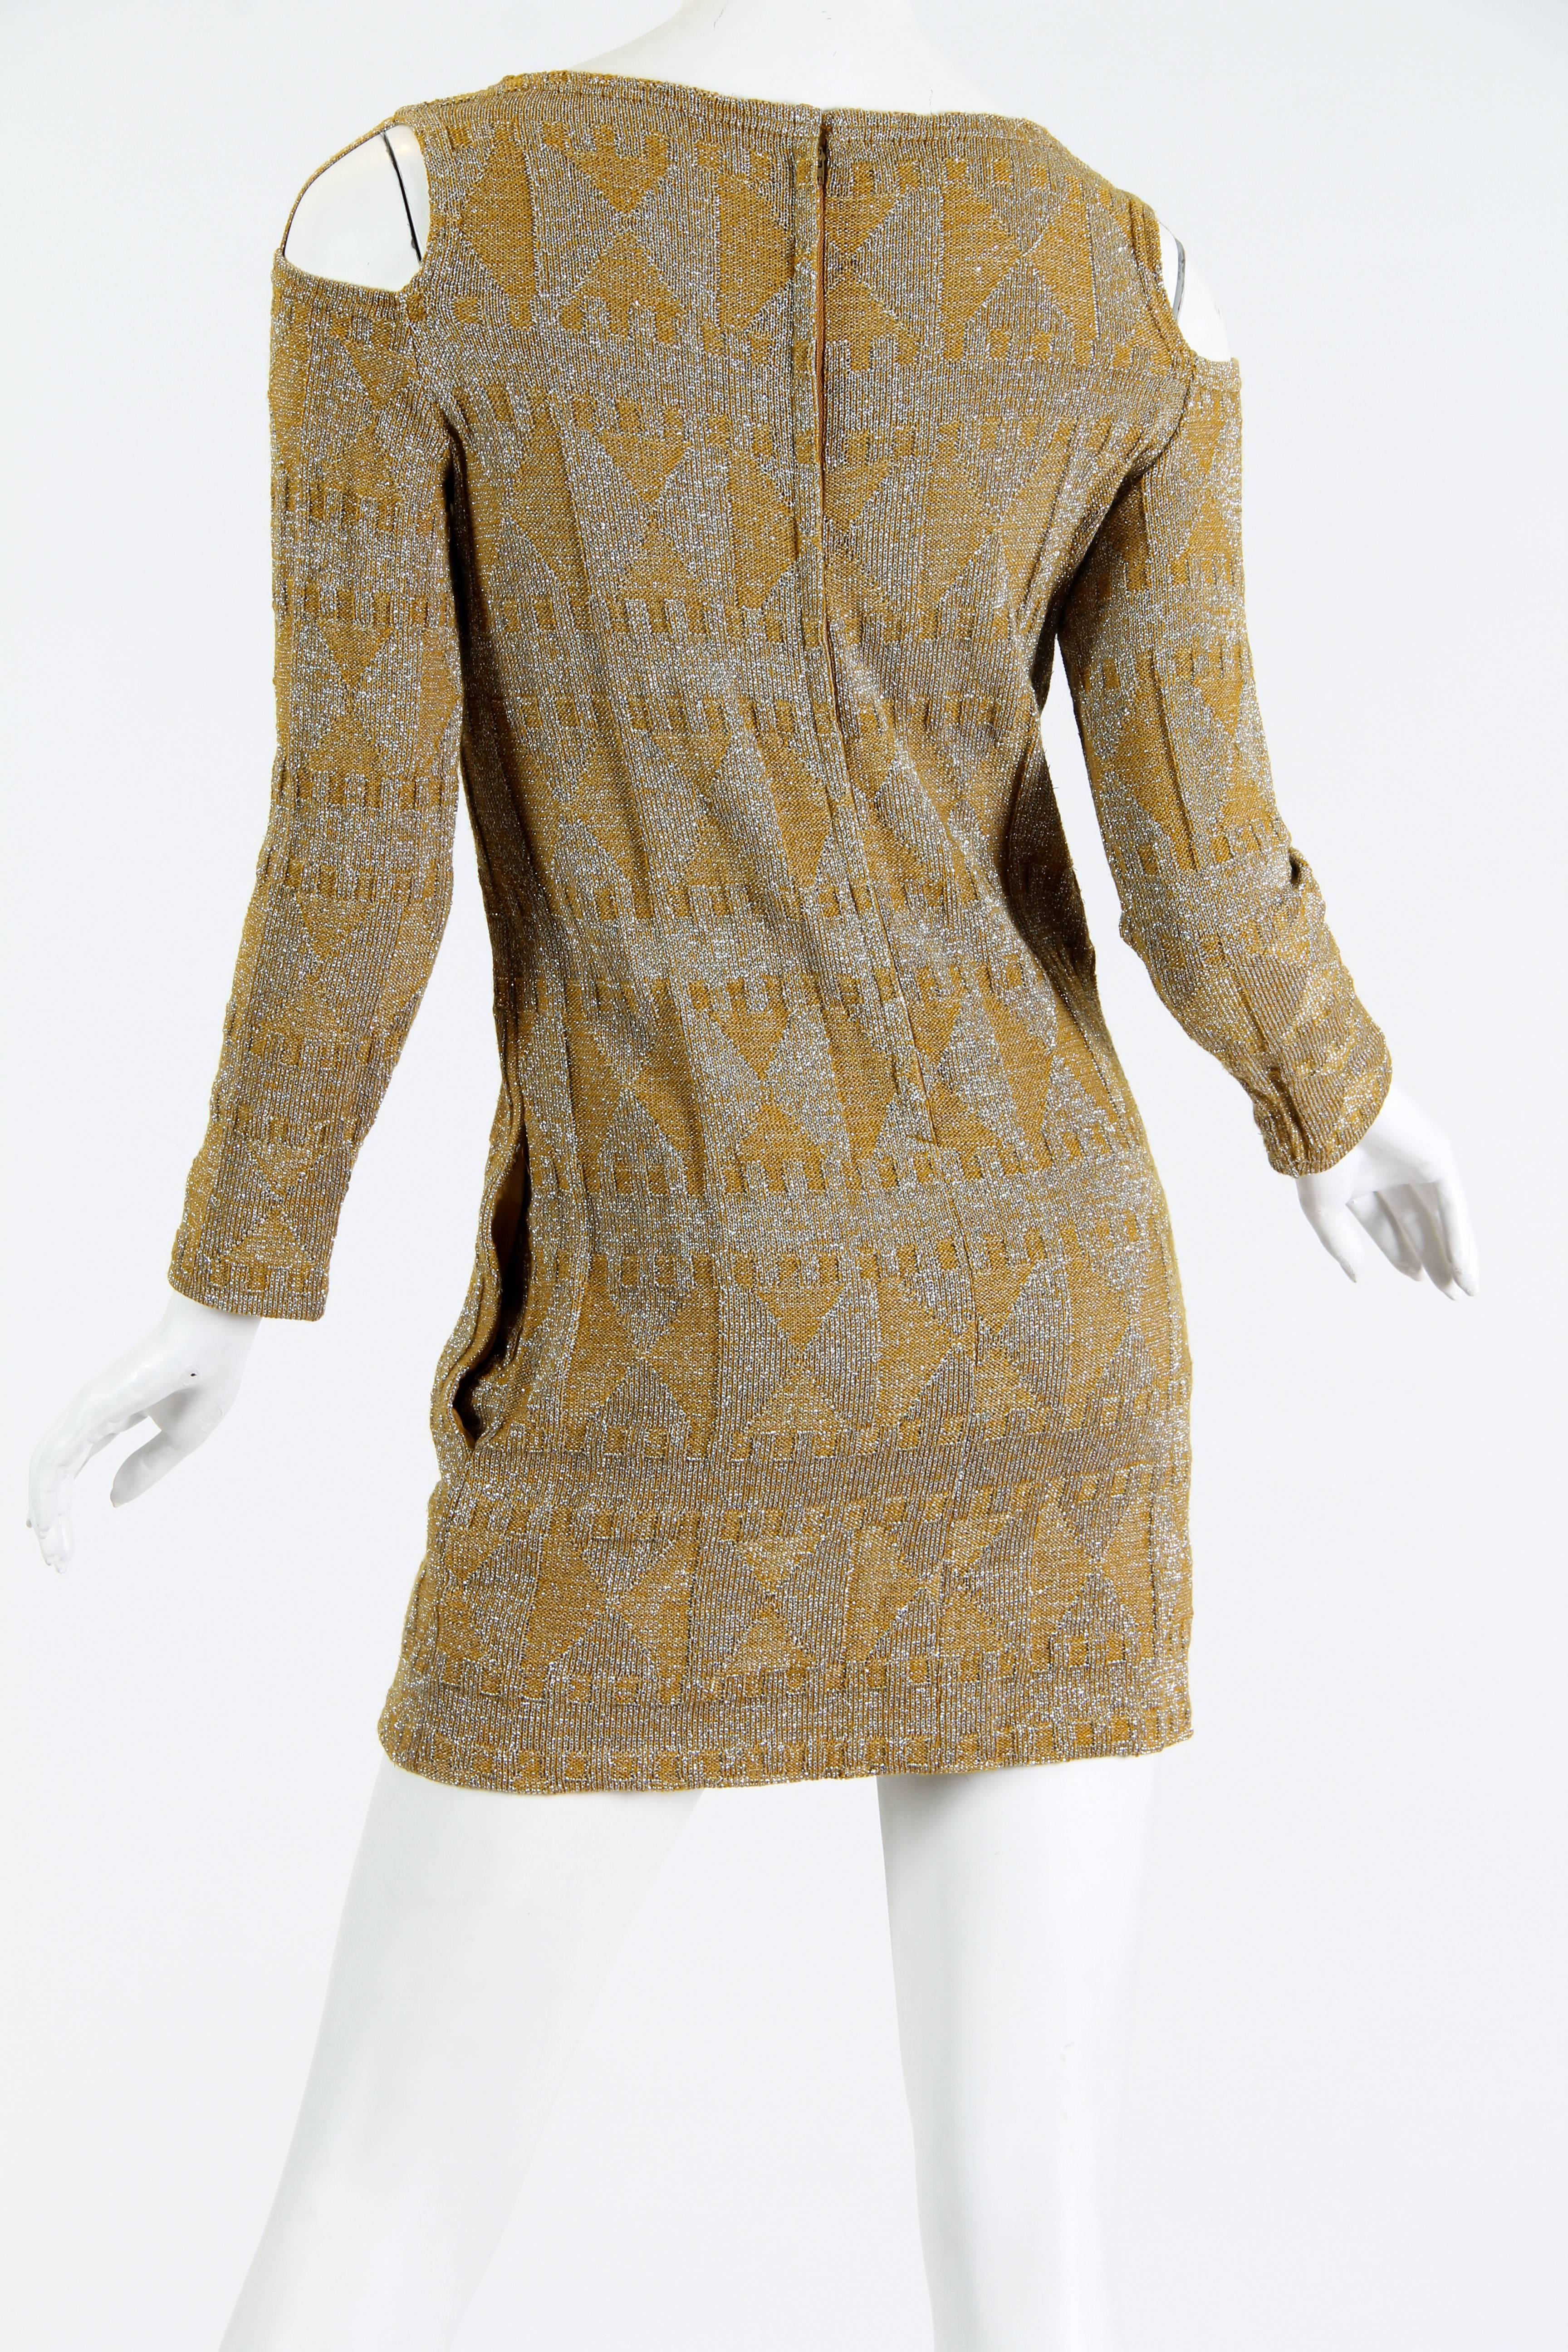 Women's 1960s Rudi Gernreich Silver and Gold Metallic Body-con Mini Dress